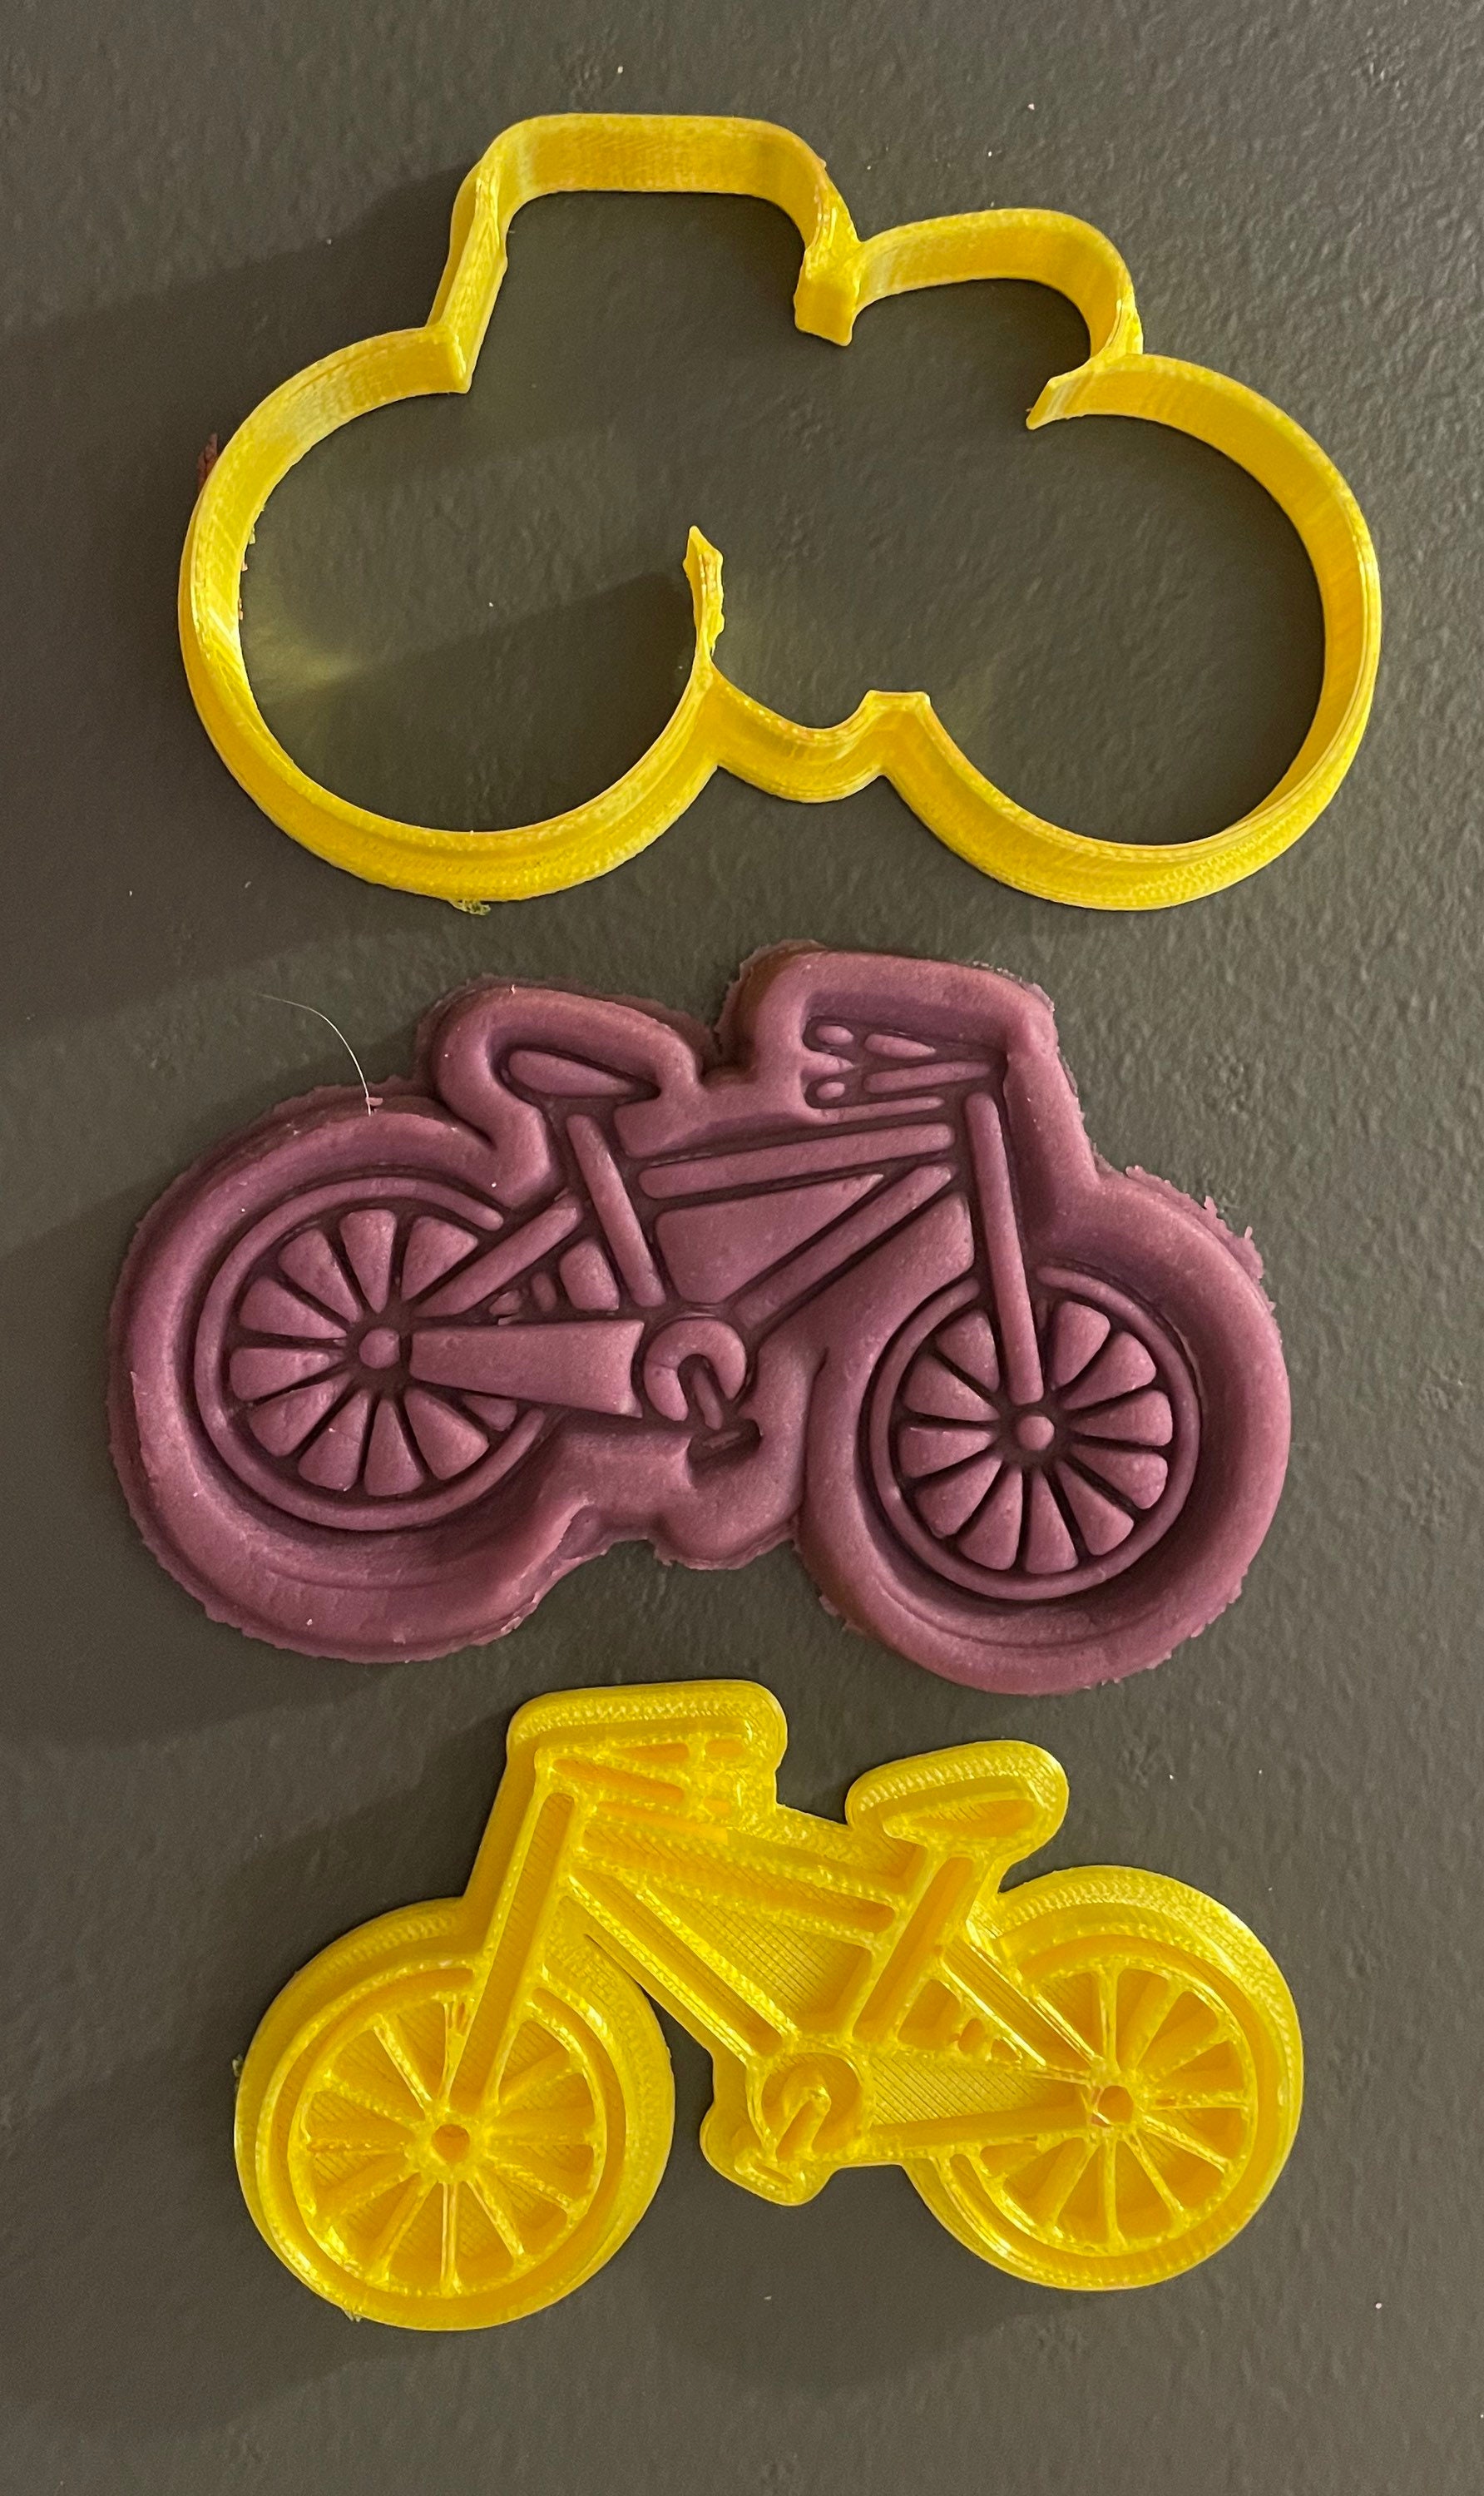 | à l'emporte-pièce de vélo cookies cadeau d'anniversaire | cadeaux pour enfants presse argile et fondant cadeau votre ami passionné obtenez-le